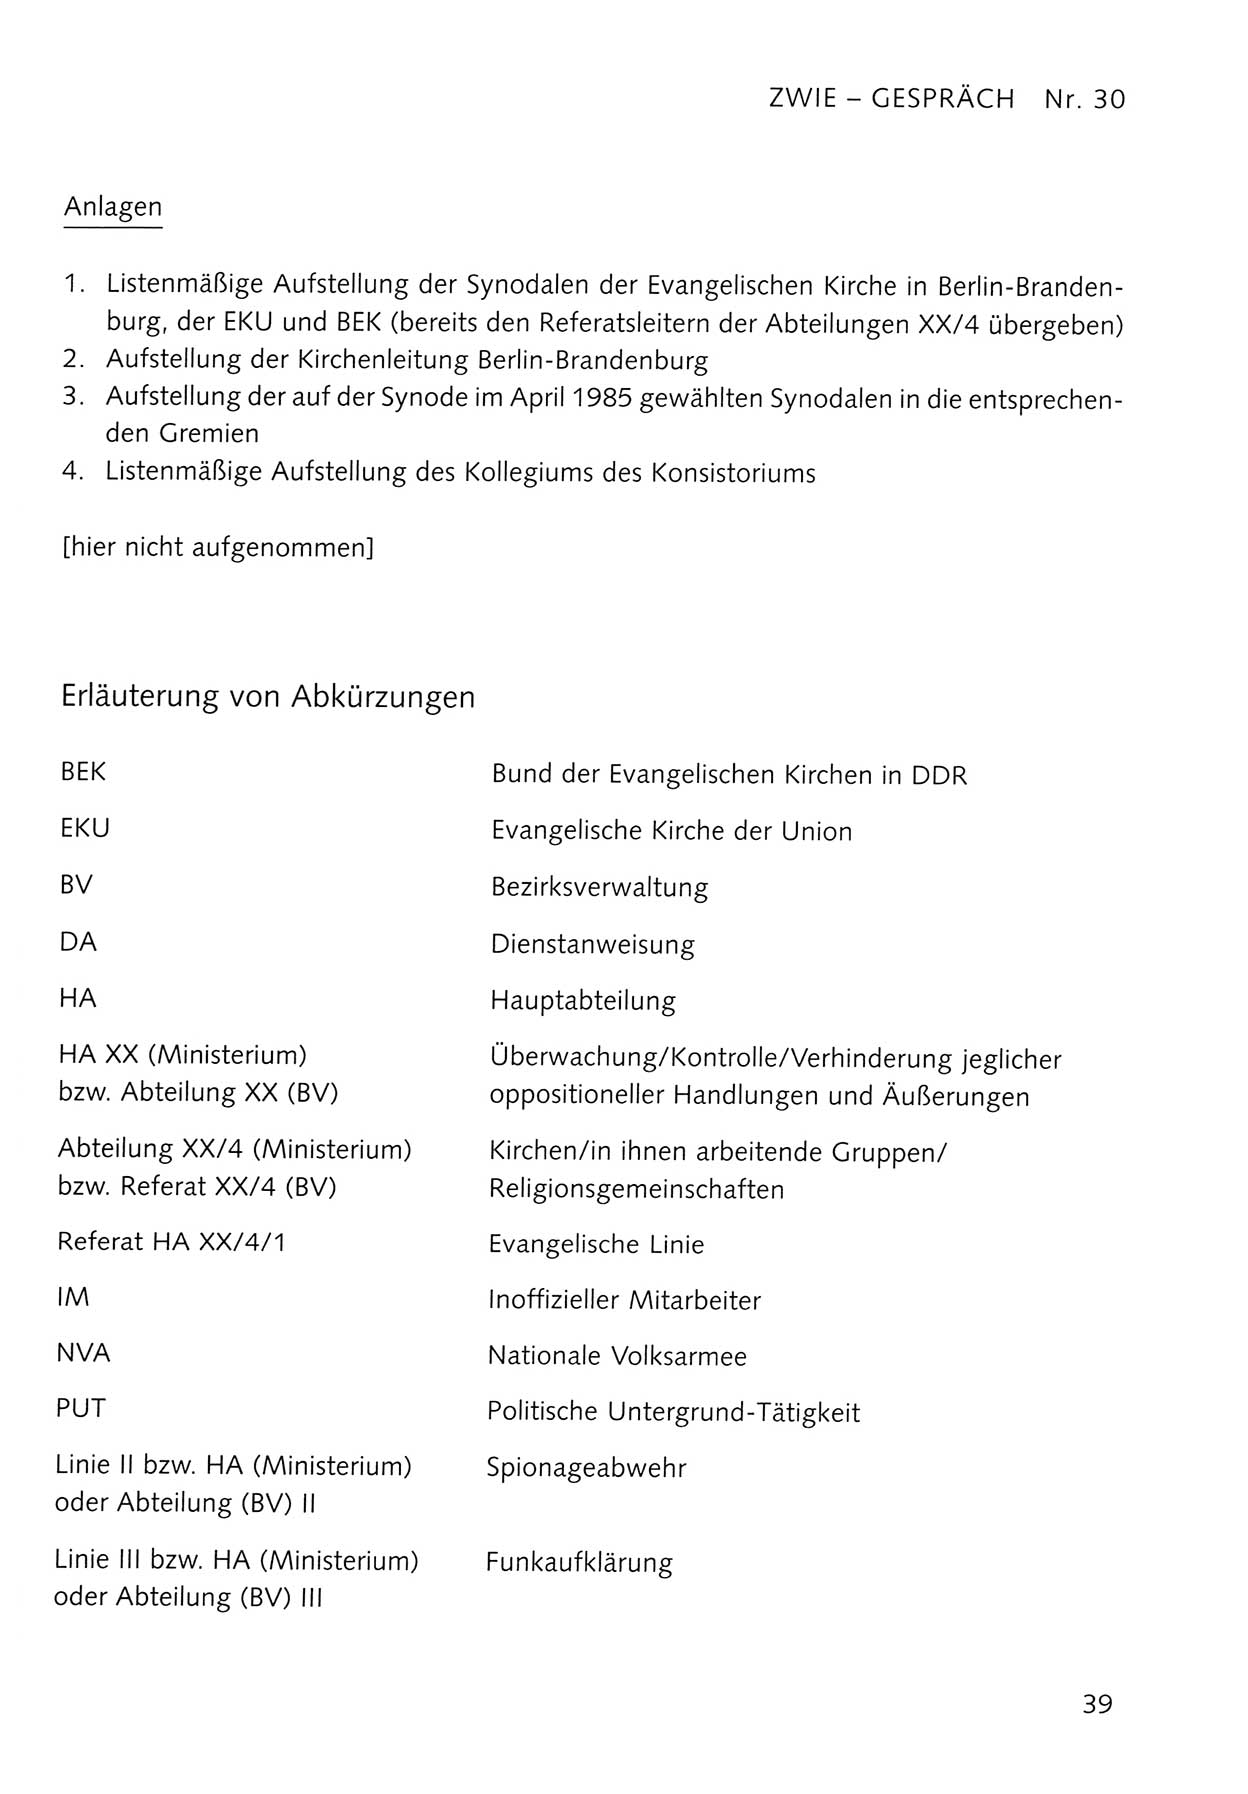 Zwie-Gespräch, Beiträge zum Umgang mit der Staatssicherheits-Vergangenheit [Deutsche Demokratische Republik (DDR)], Ausgabe Nr. 30, Berlin 1995, Seite 39 (Zwie-Gespr. Ausg. 30 1995, S. 39)